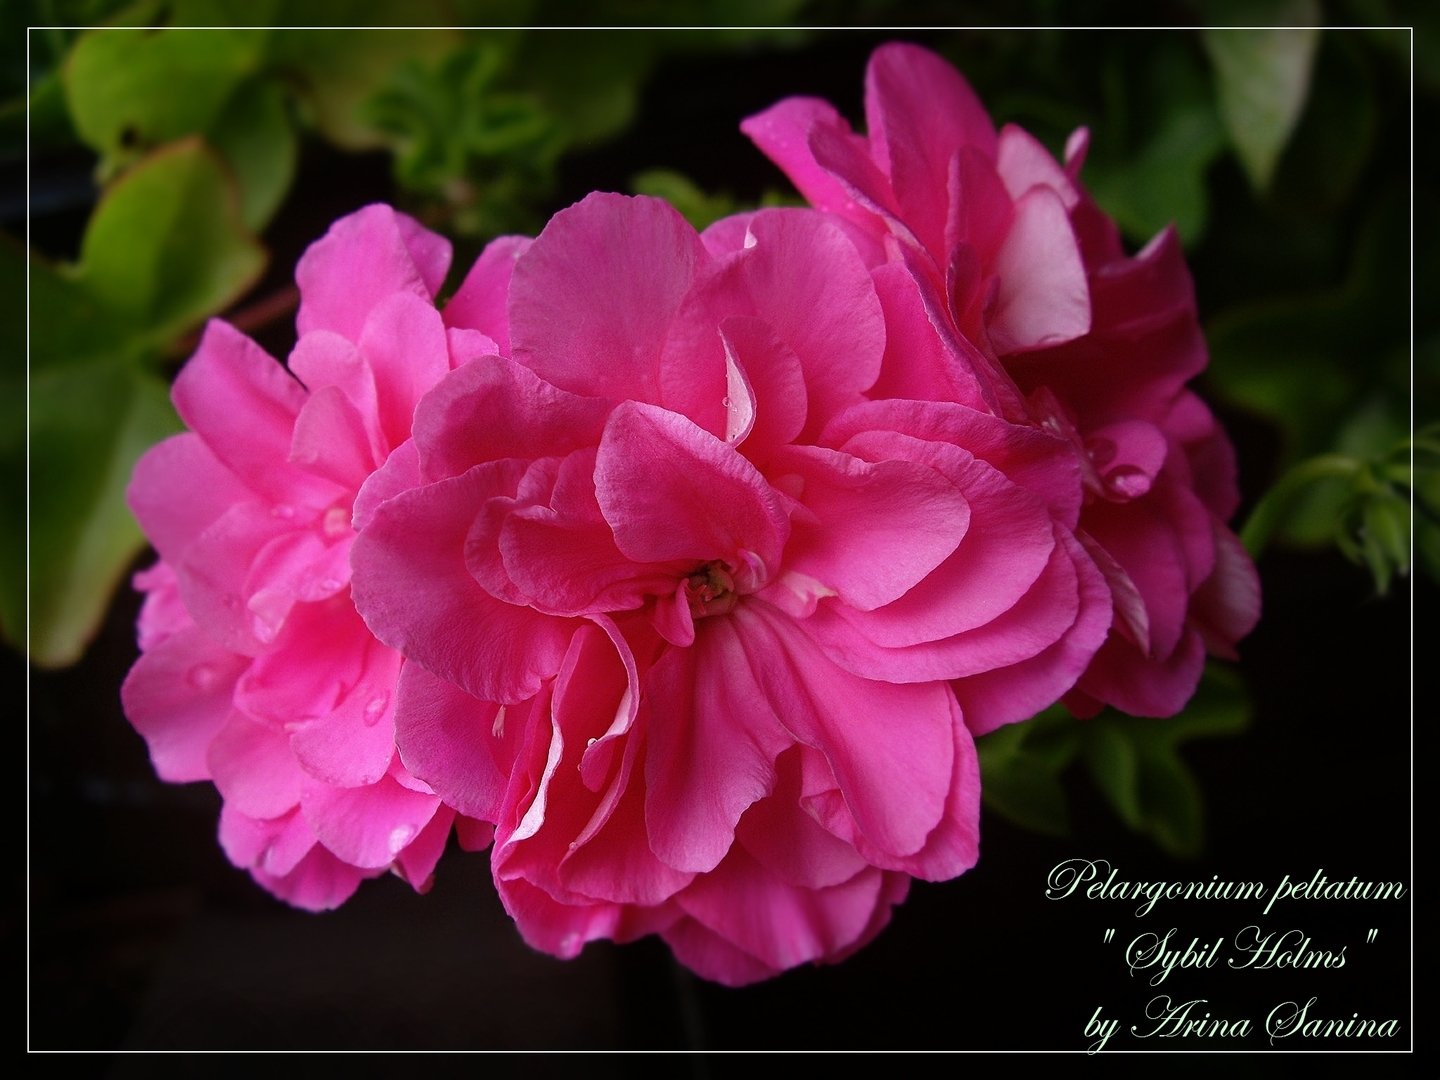 Pac pink sybil пеларгония фото и описание